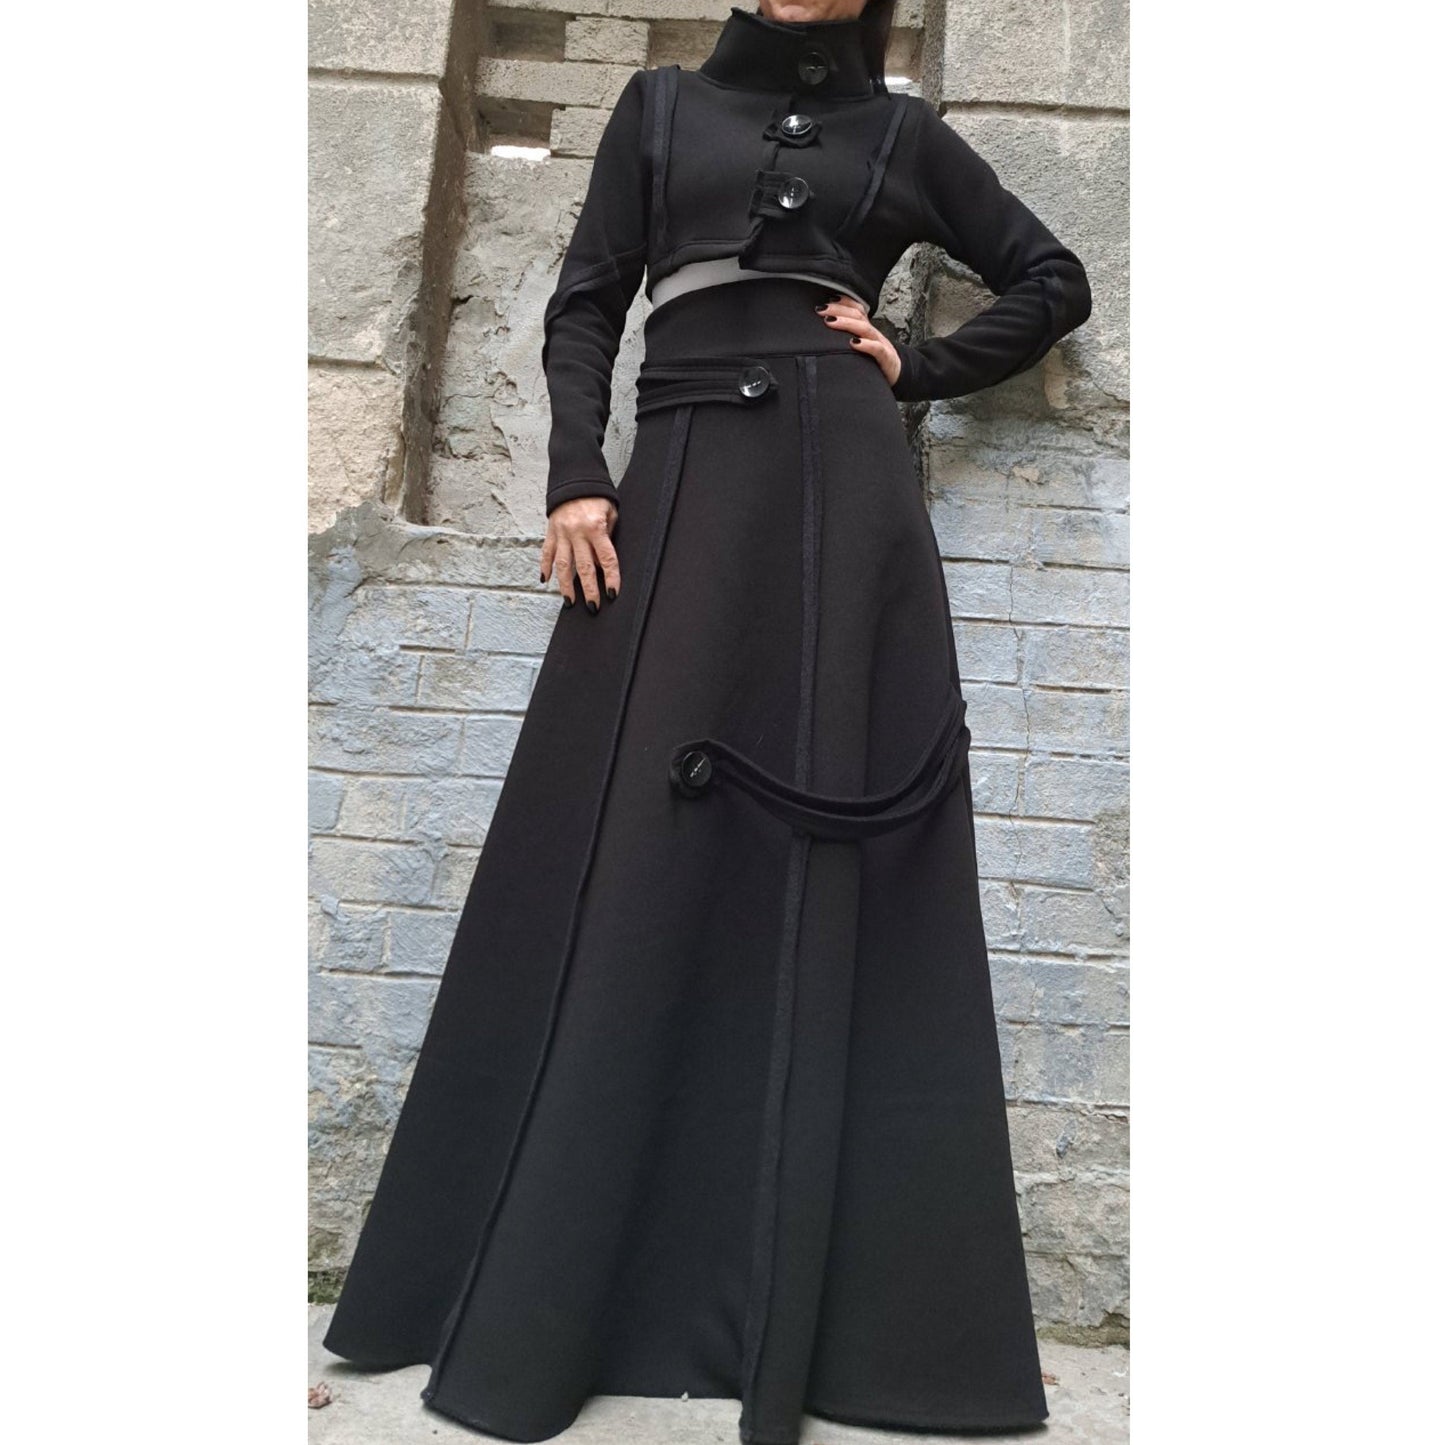 New Lovely Long Skirt - Handmade clothing from AngelBySilvia - Top Designer Brands 